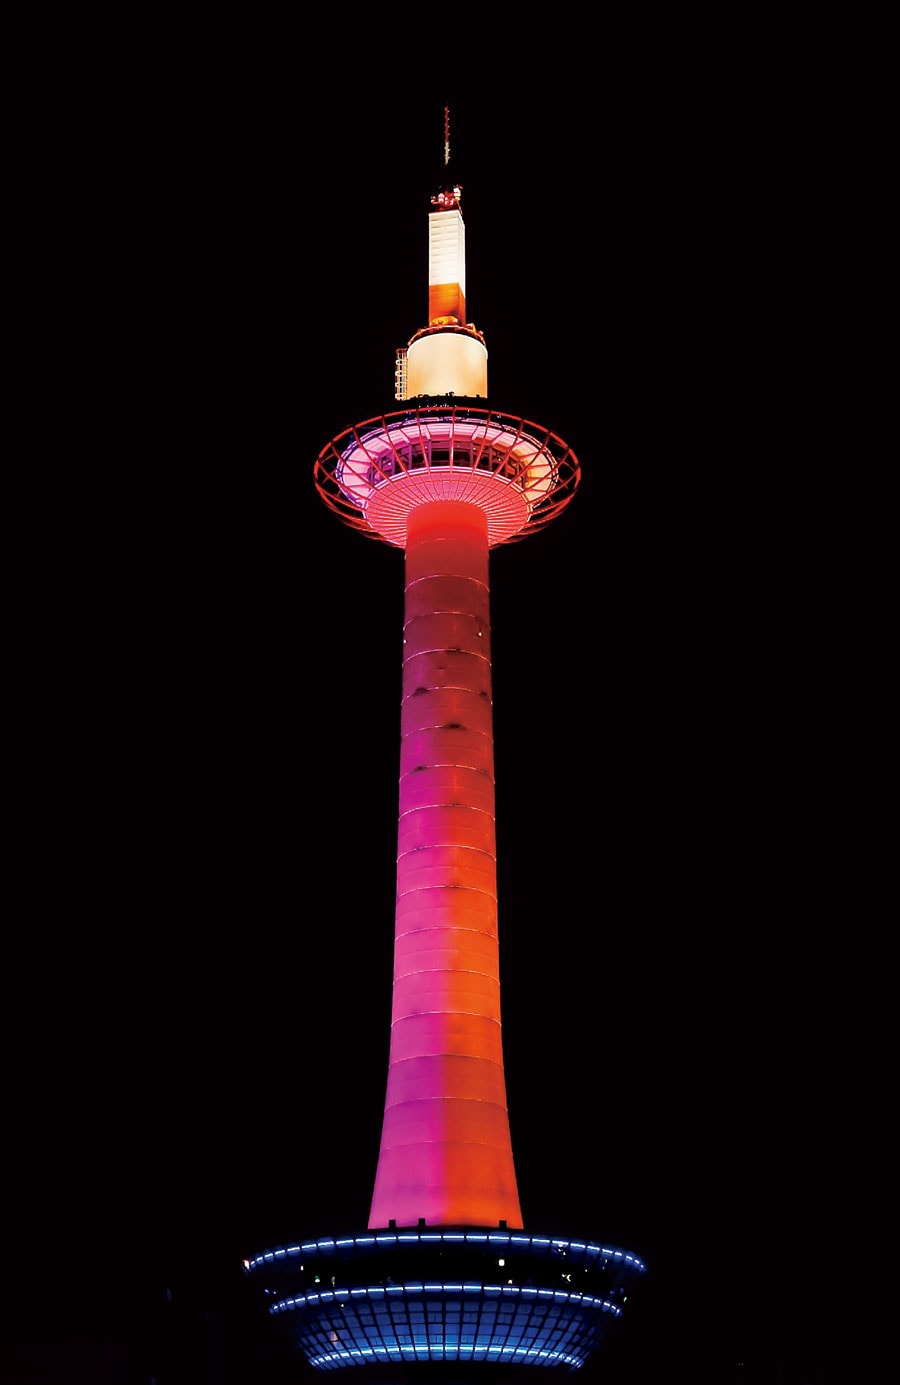 京都タワー。世界でも珍しい建築構造の京の街を照らすランドマーク。鉄骨を一切使わず、円筒型の鋼板を繋ぎ合わせるモノコック構造を世界に先駆け採用。地上から避雷針までは131メートルと京都市内では最も高いスポット。ライトアップの色を変えることもできる（有料）。©京阪ホテルズ＆リゾーツ株式会社　京都タワー